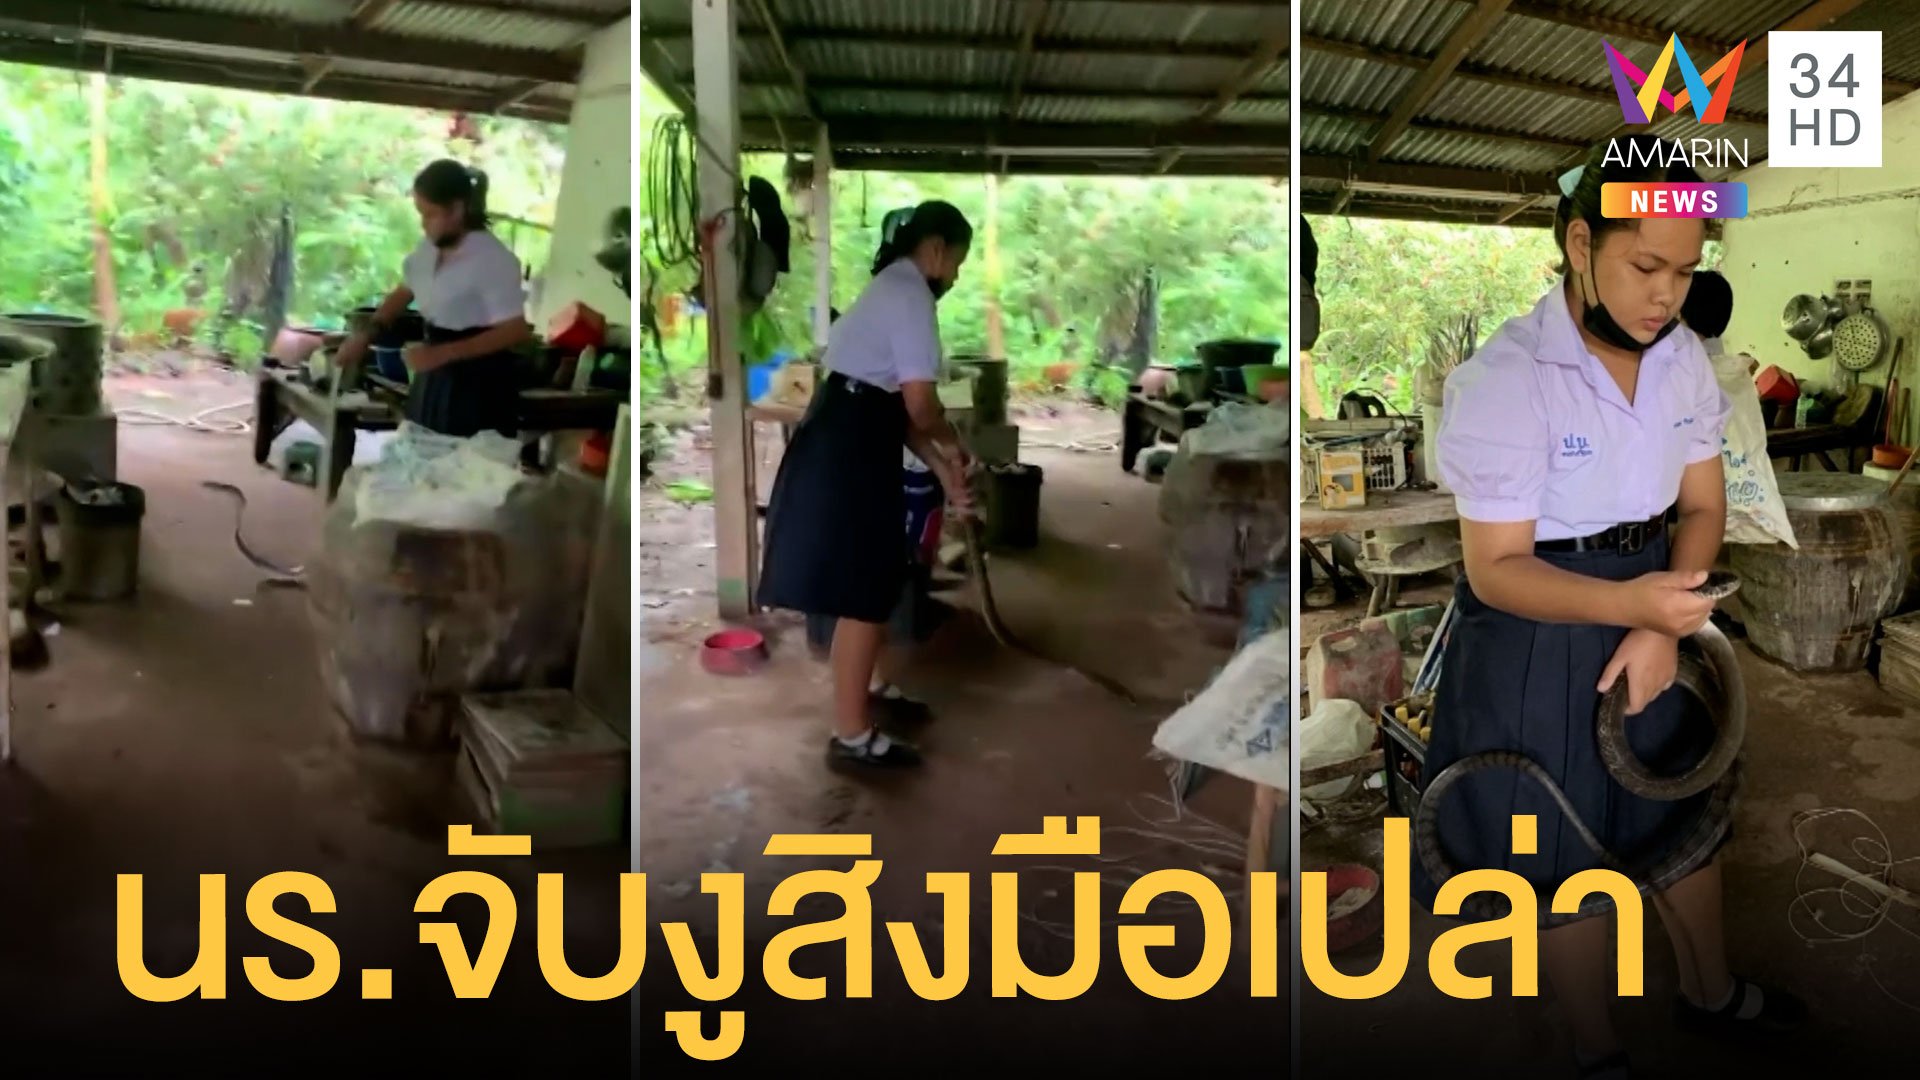 นักเรียนสาวใจกล้า จับงูสิงยาว 2 เมตร บุกในครัวเพื่อนบ้าน | ข่าวเที่ยงอมรินทร์ | 17 ส.ค. 65 | AMARIN TVHD34